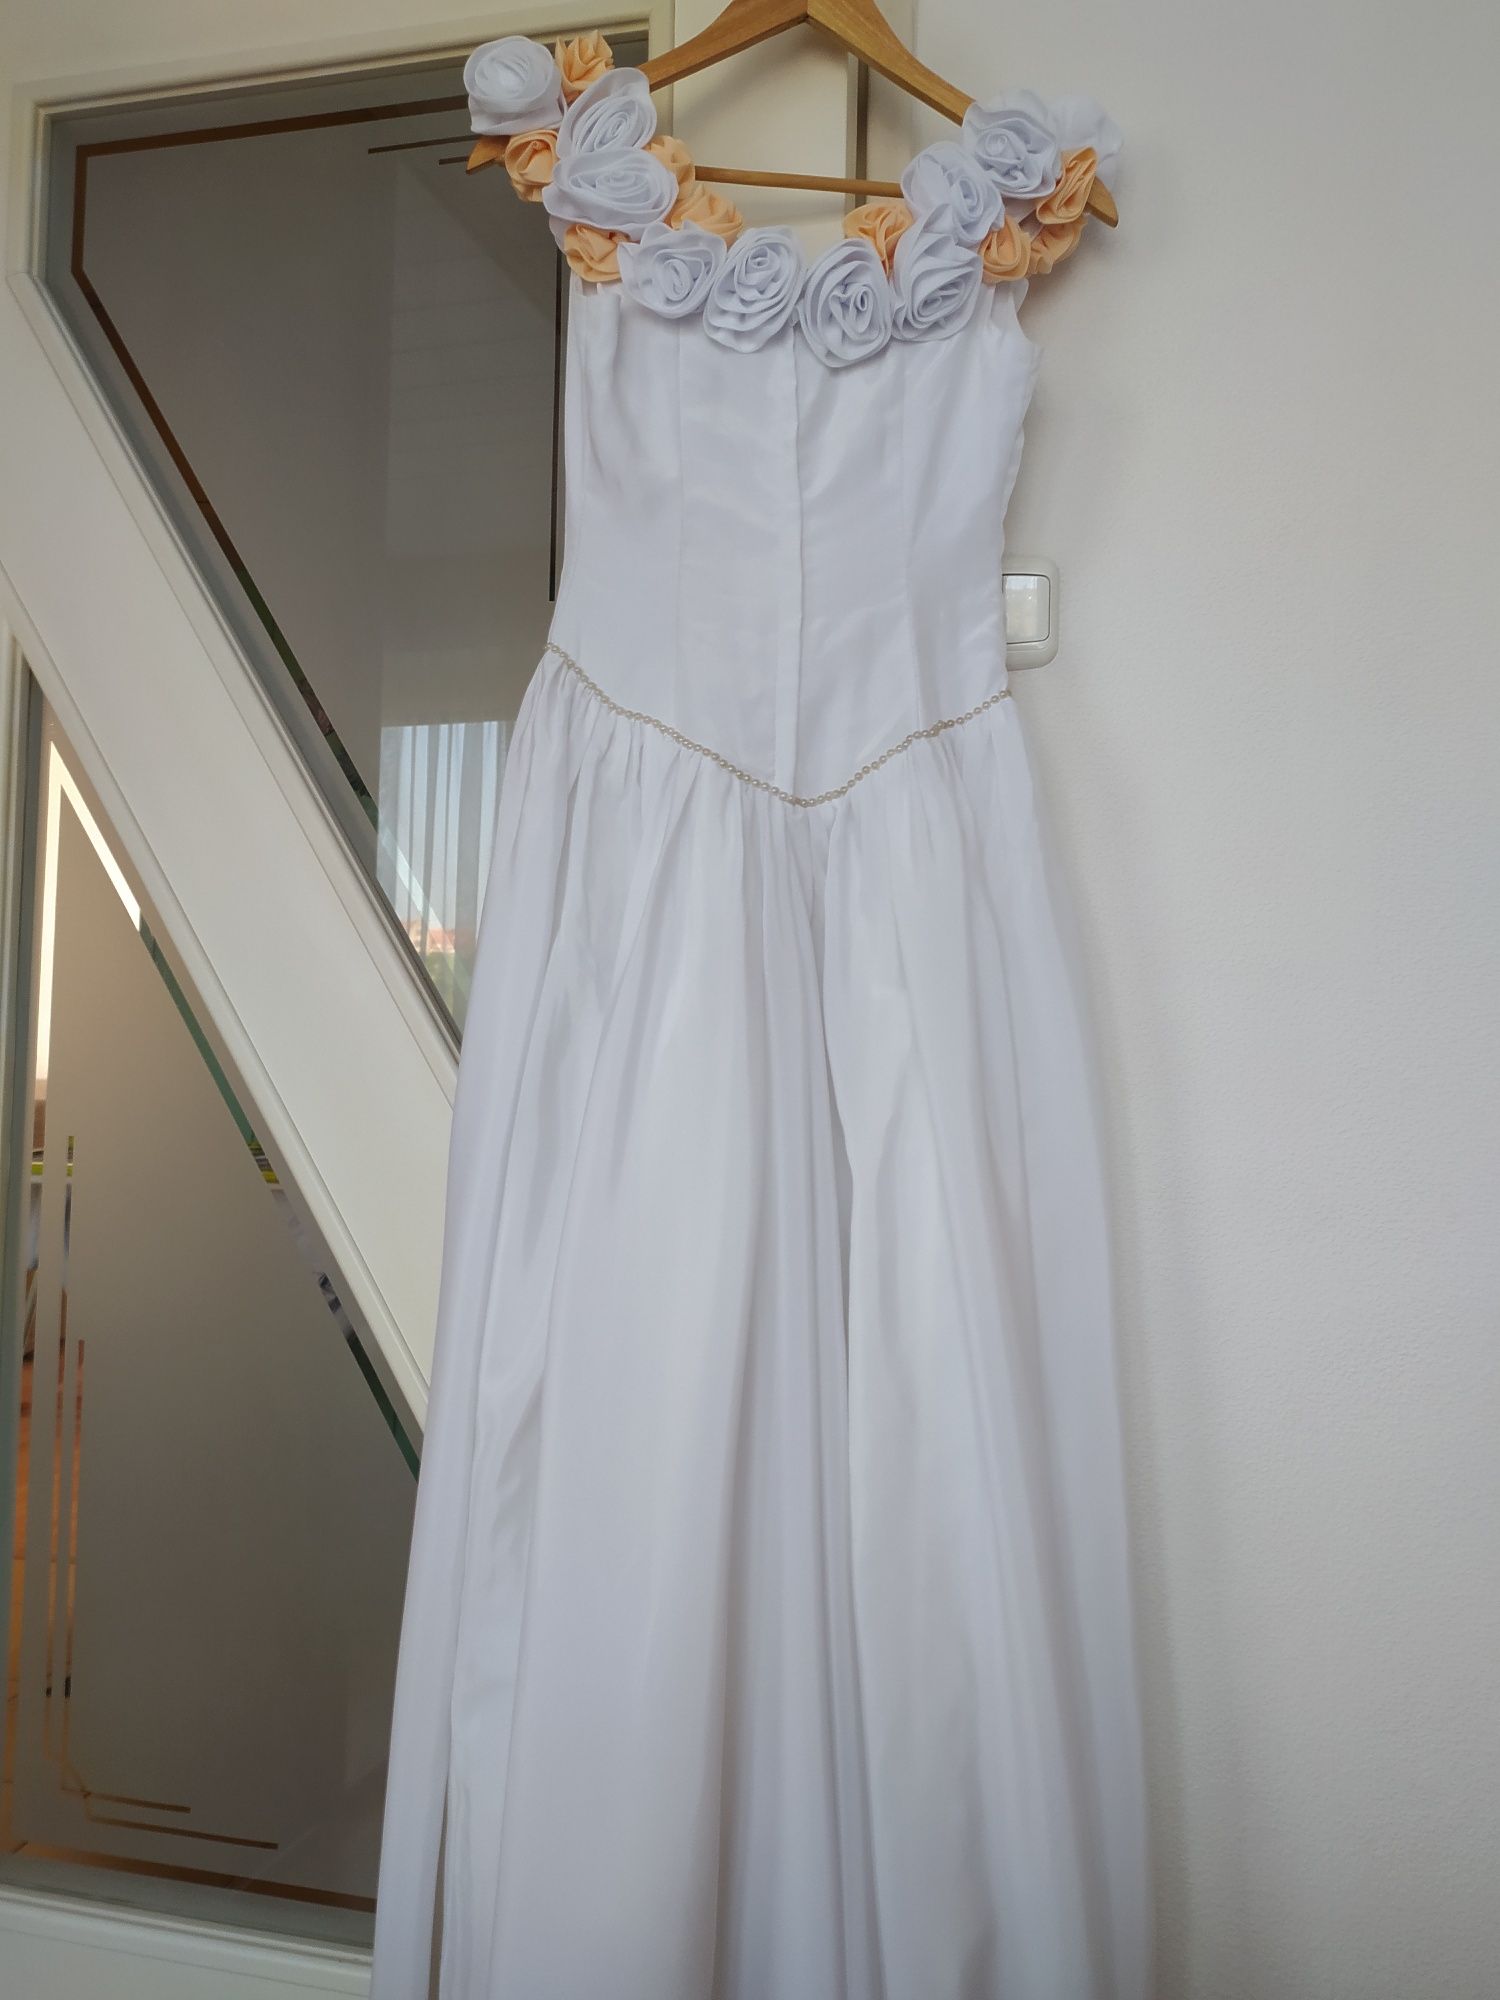 Biała suknia ślubna z różami białymi i łososiowymi na dekocie r.34.